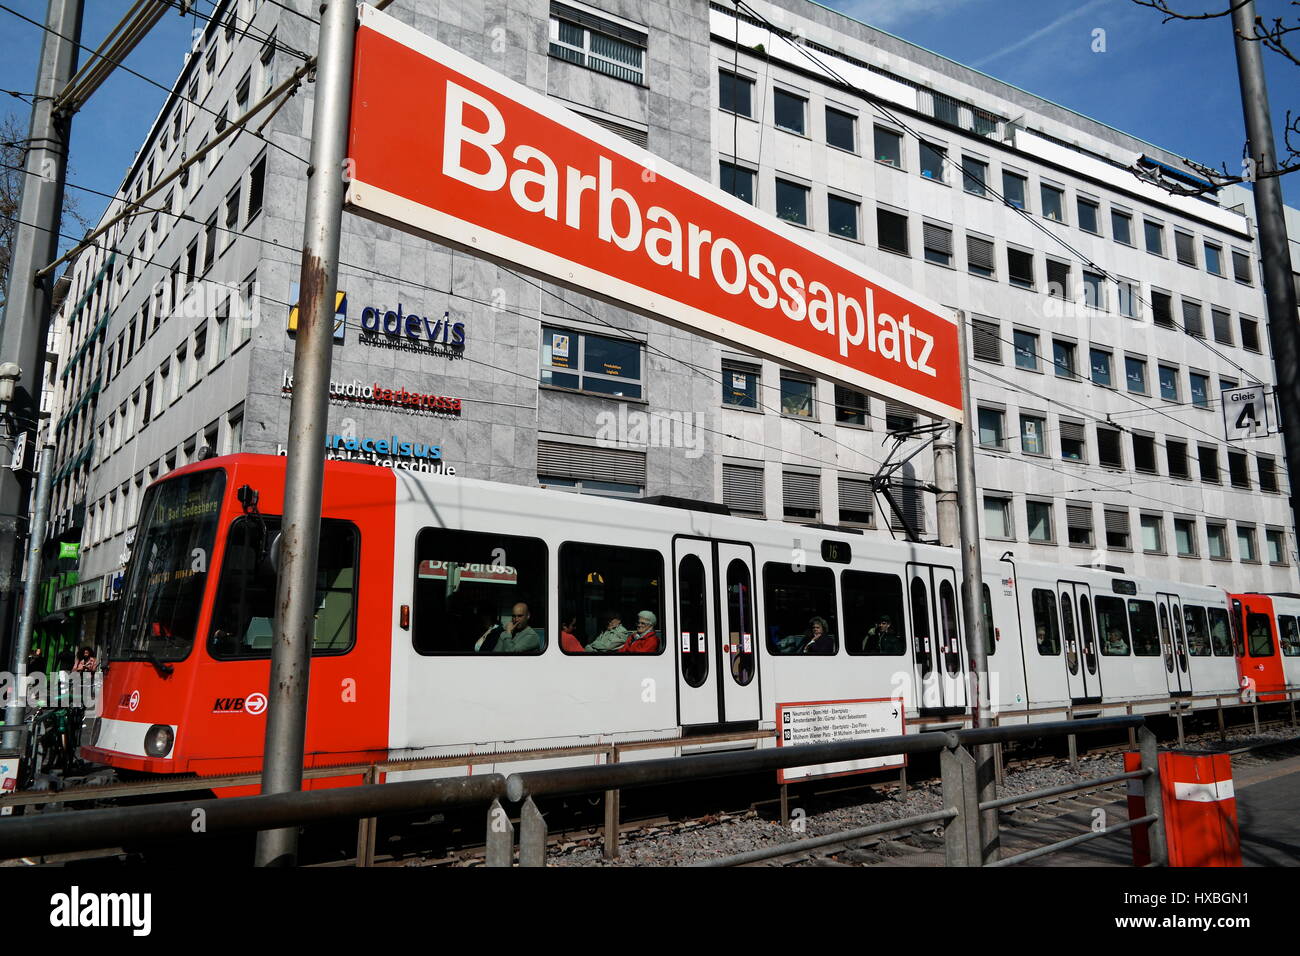 Straßenbahn an der Haltestelle Barbarossaplatz in Köln (Cologne), Nordrhein-Westfalen, Deutschland Stock Photo